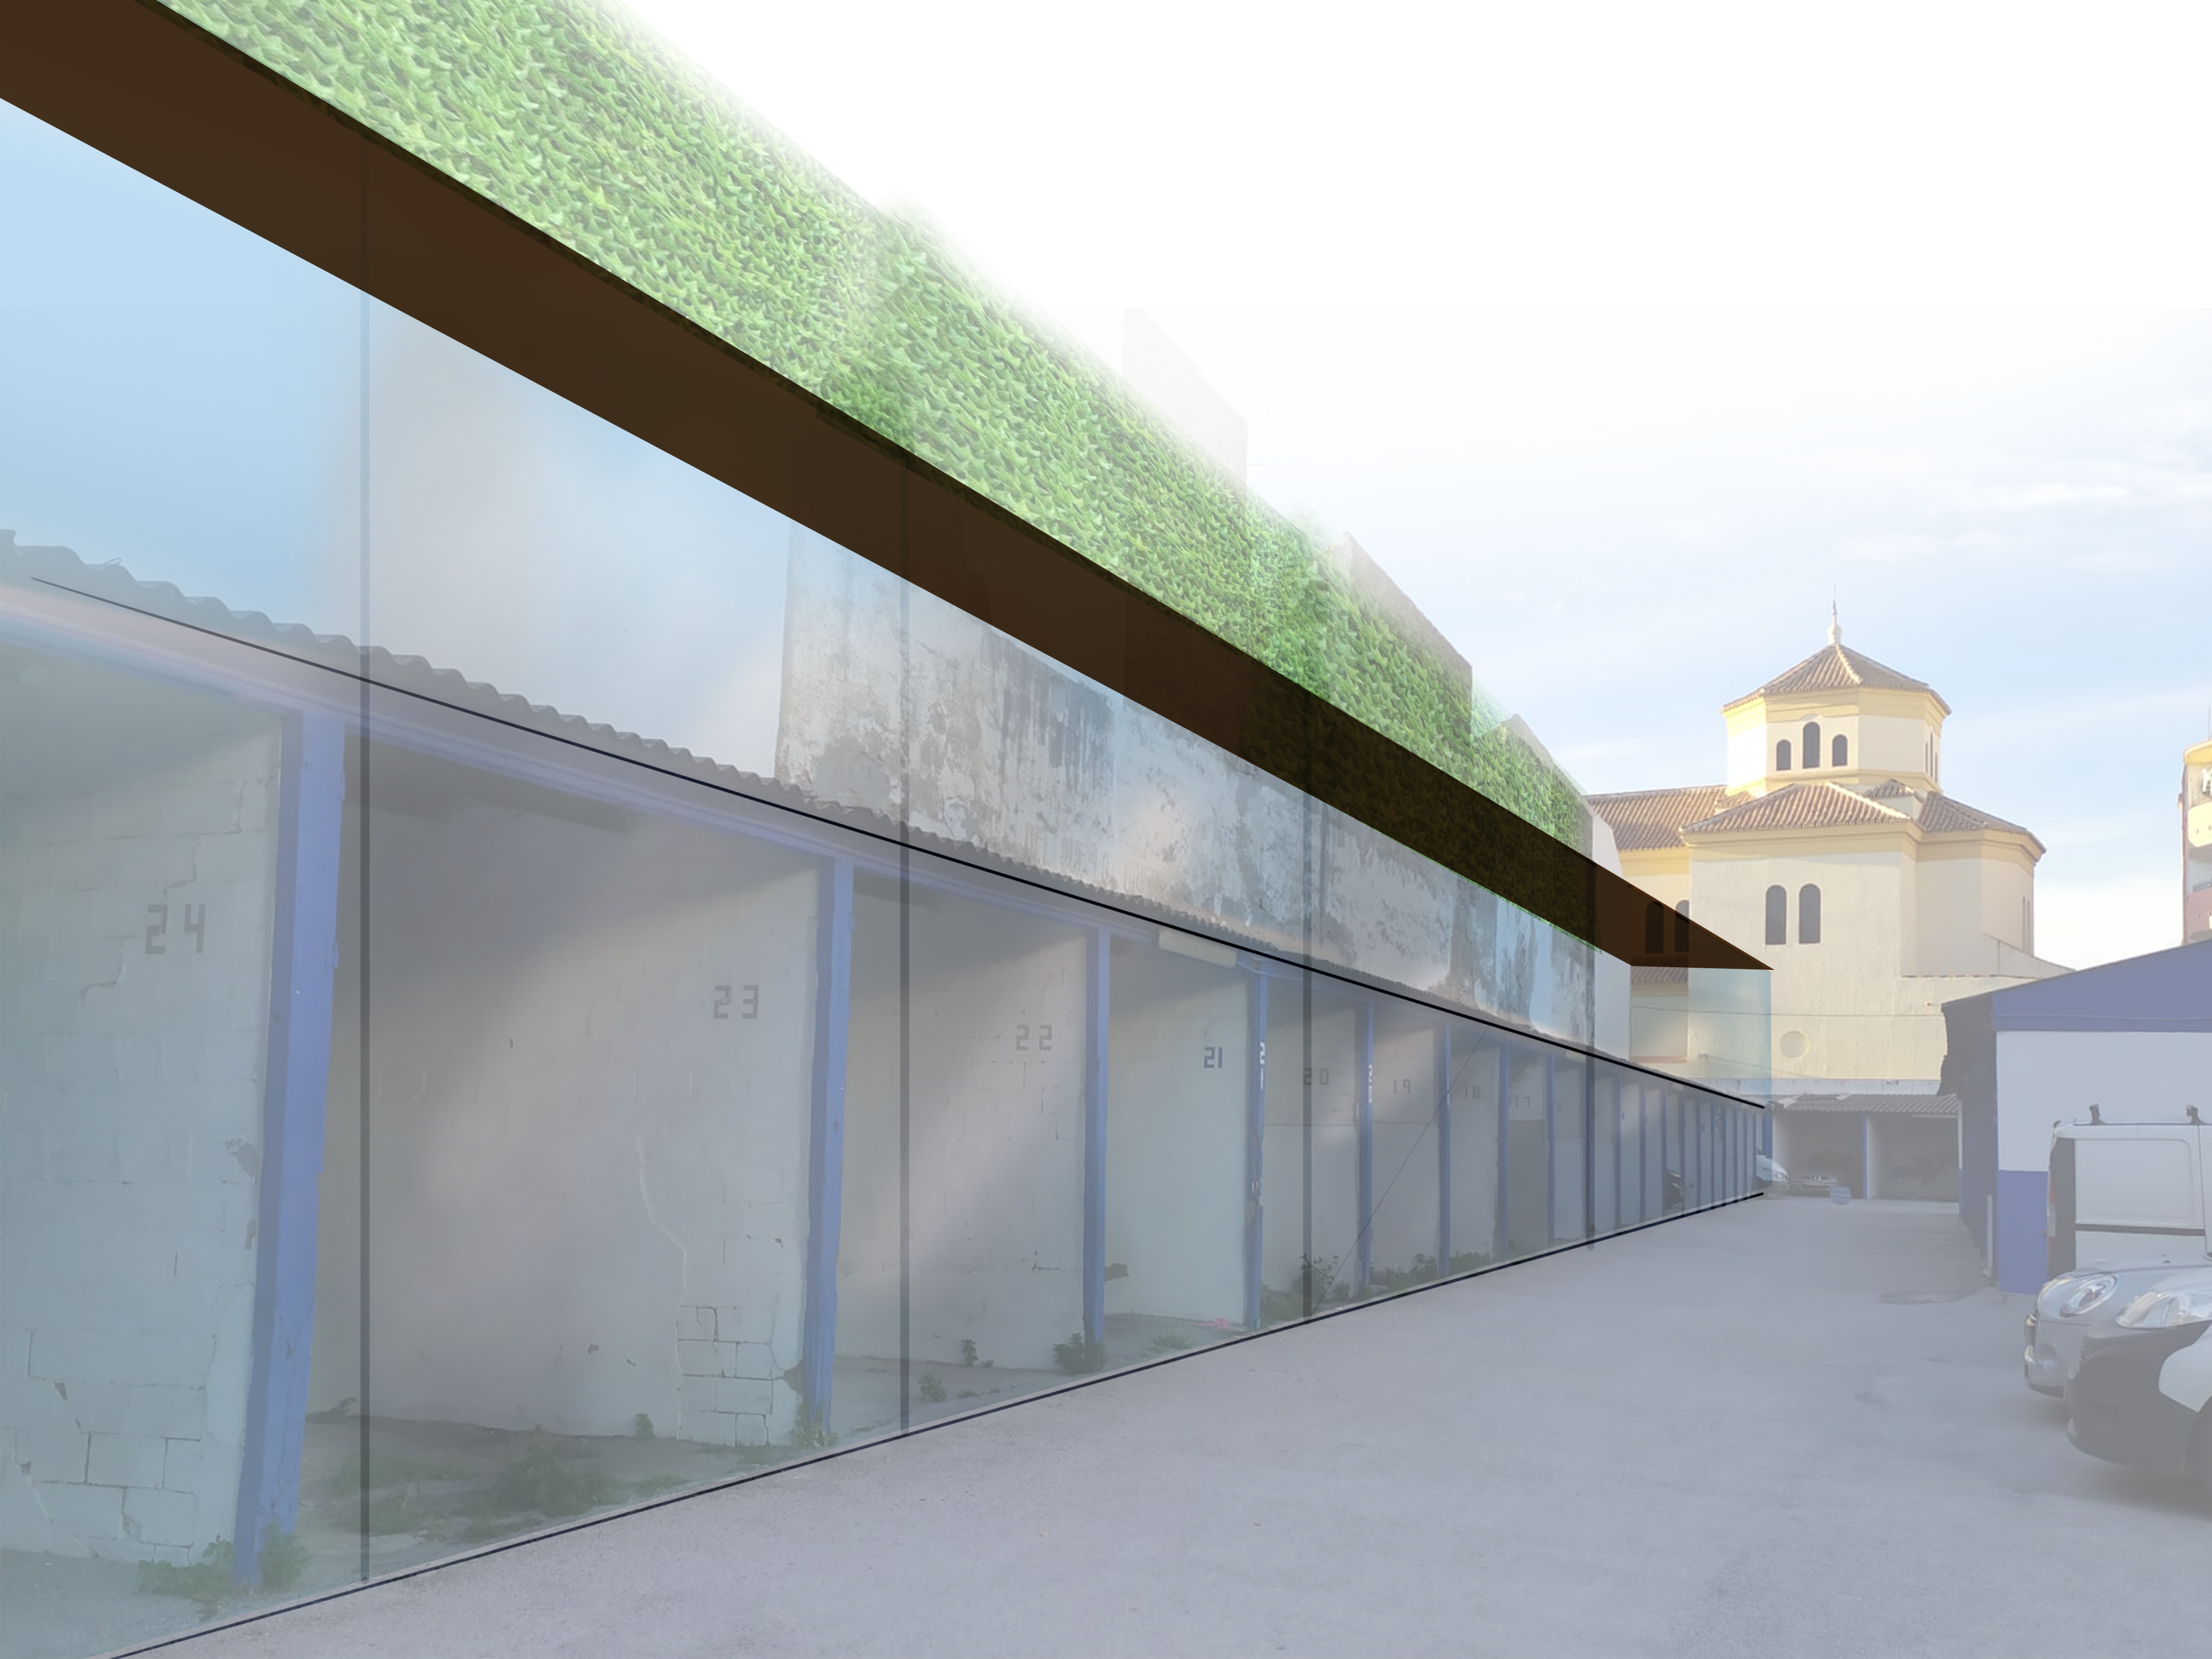 Garaje Las Delicias, propuesta de nueva construcción, 2021.